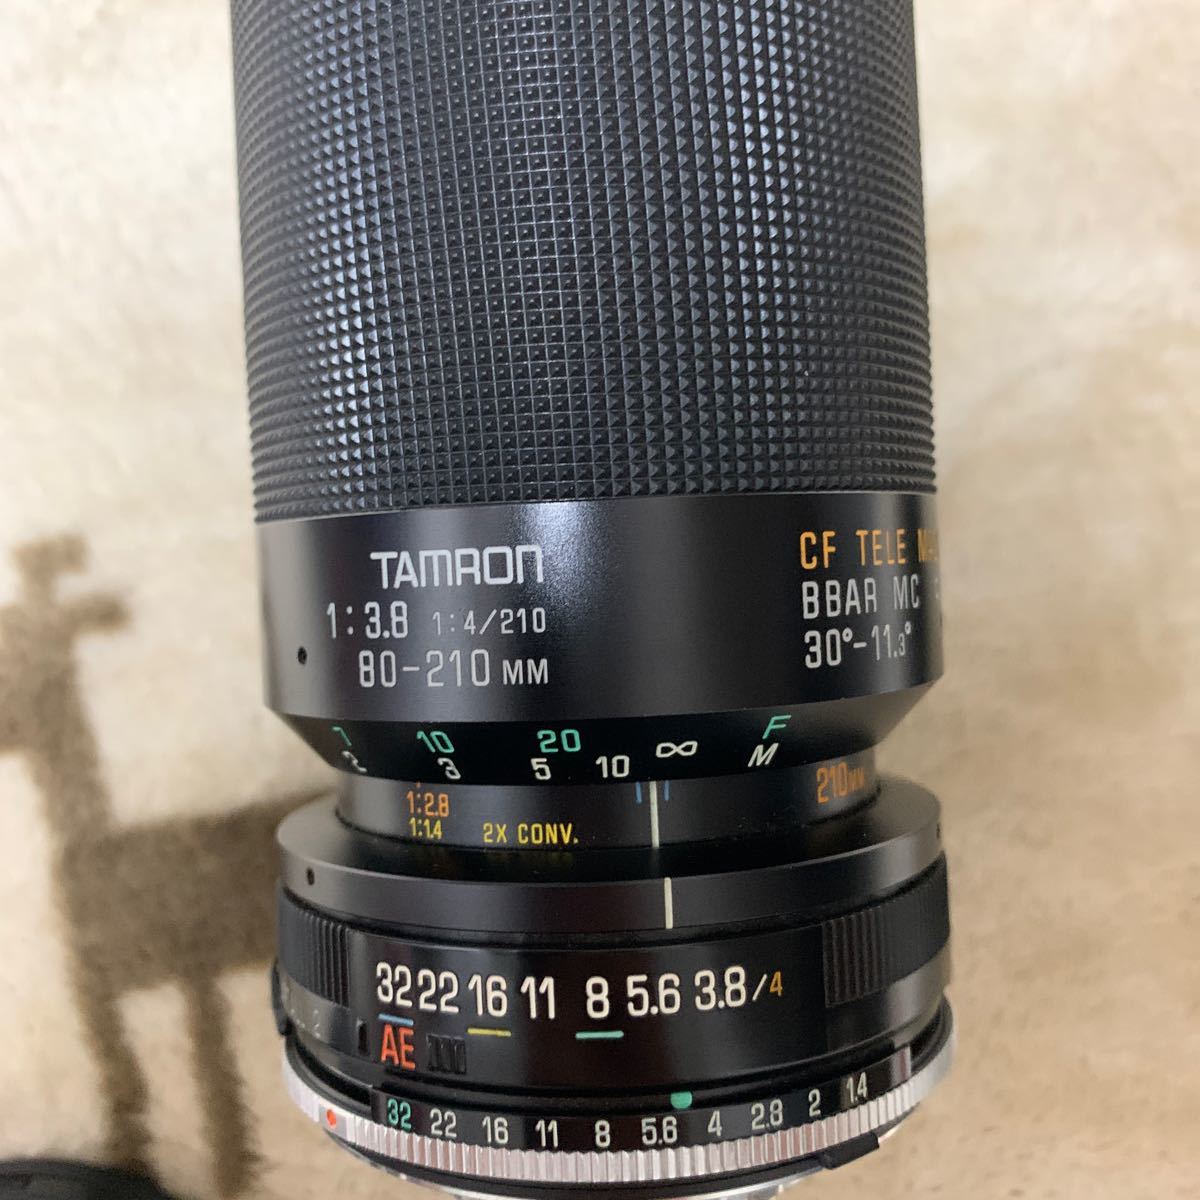 MINOLTA ミノルタ XG-S レンズ 35-70mm 1:3.5 TAMRON 1:3.8 1:4/210 80-210mm _画像8